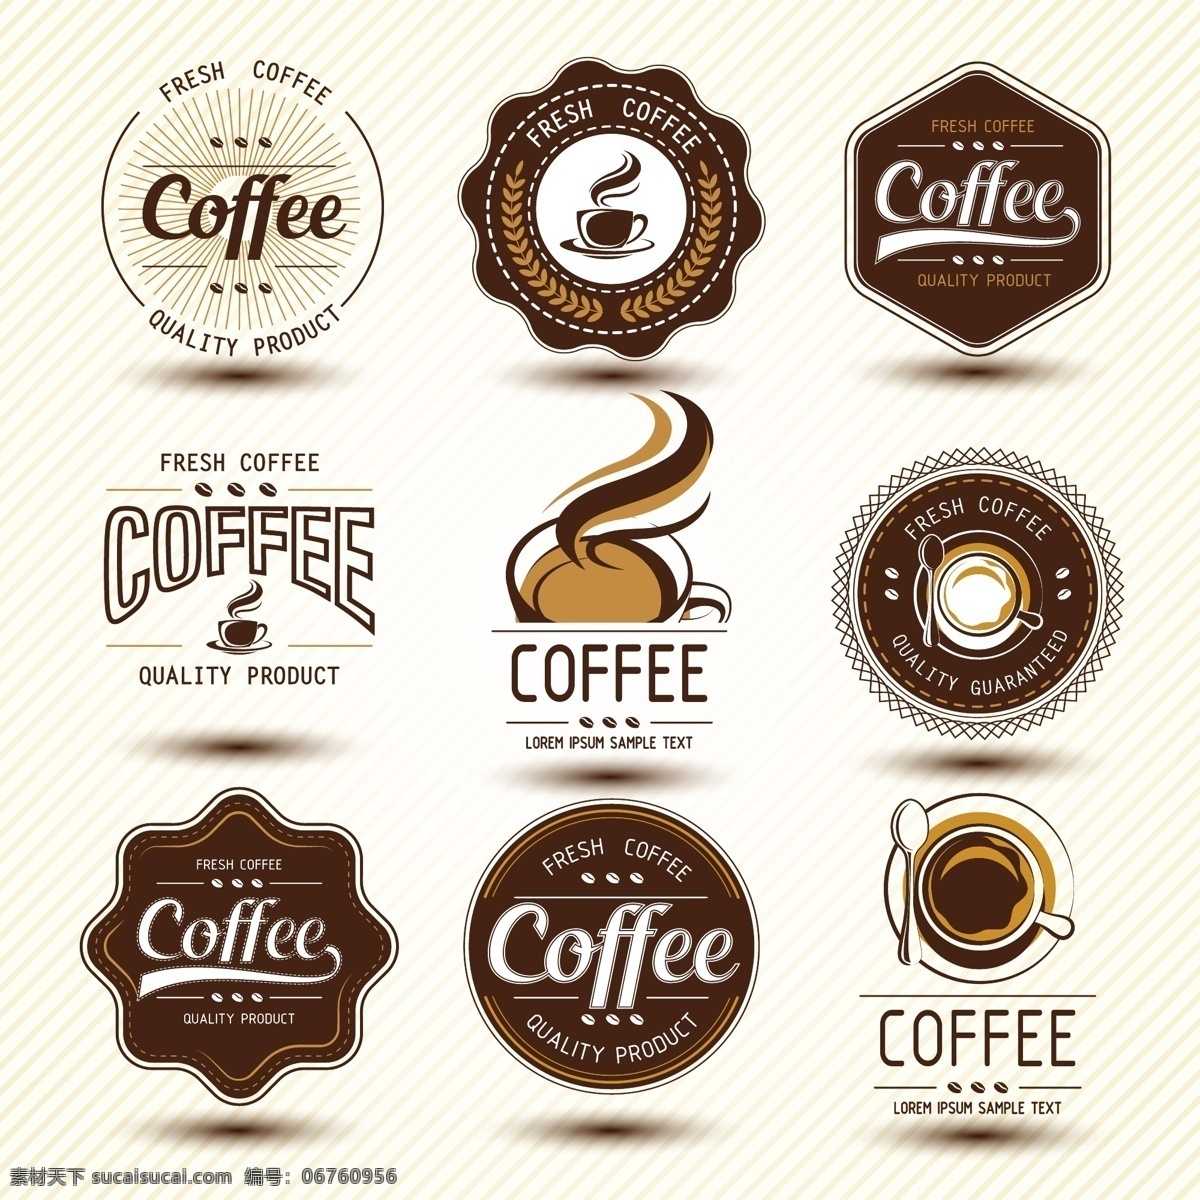 咖啡标签 咖啡logo coffee 复古标签 咖啡 欧式标签 标签设计 咖啡杯 咖啡设计 咖啡手绘 咖啡图标 咖啡时间 咖啡豆 咖啡馆 咖啡标志 咖啡店 咖啡元素 咖啡店图标 logo 咖啡商标